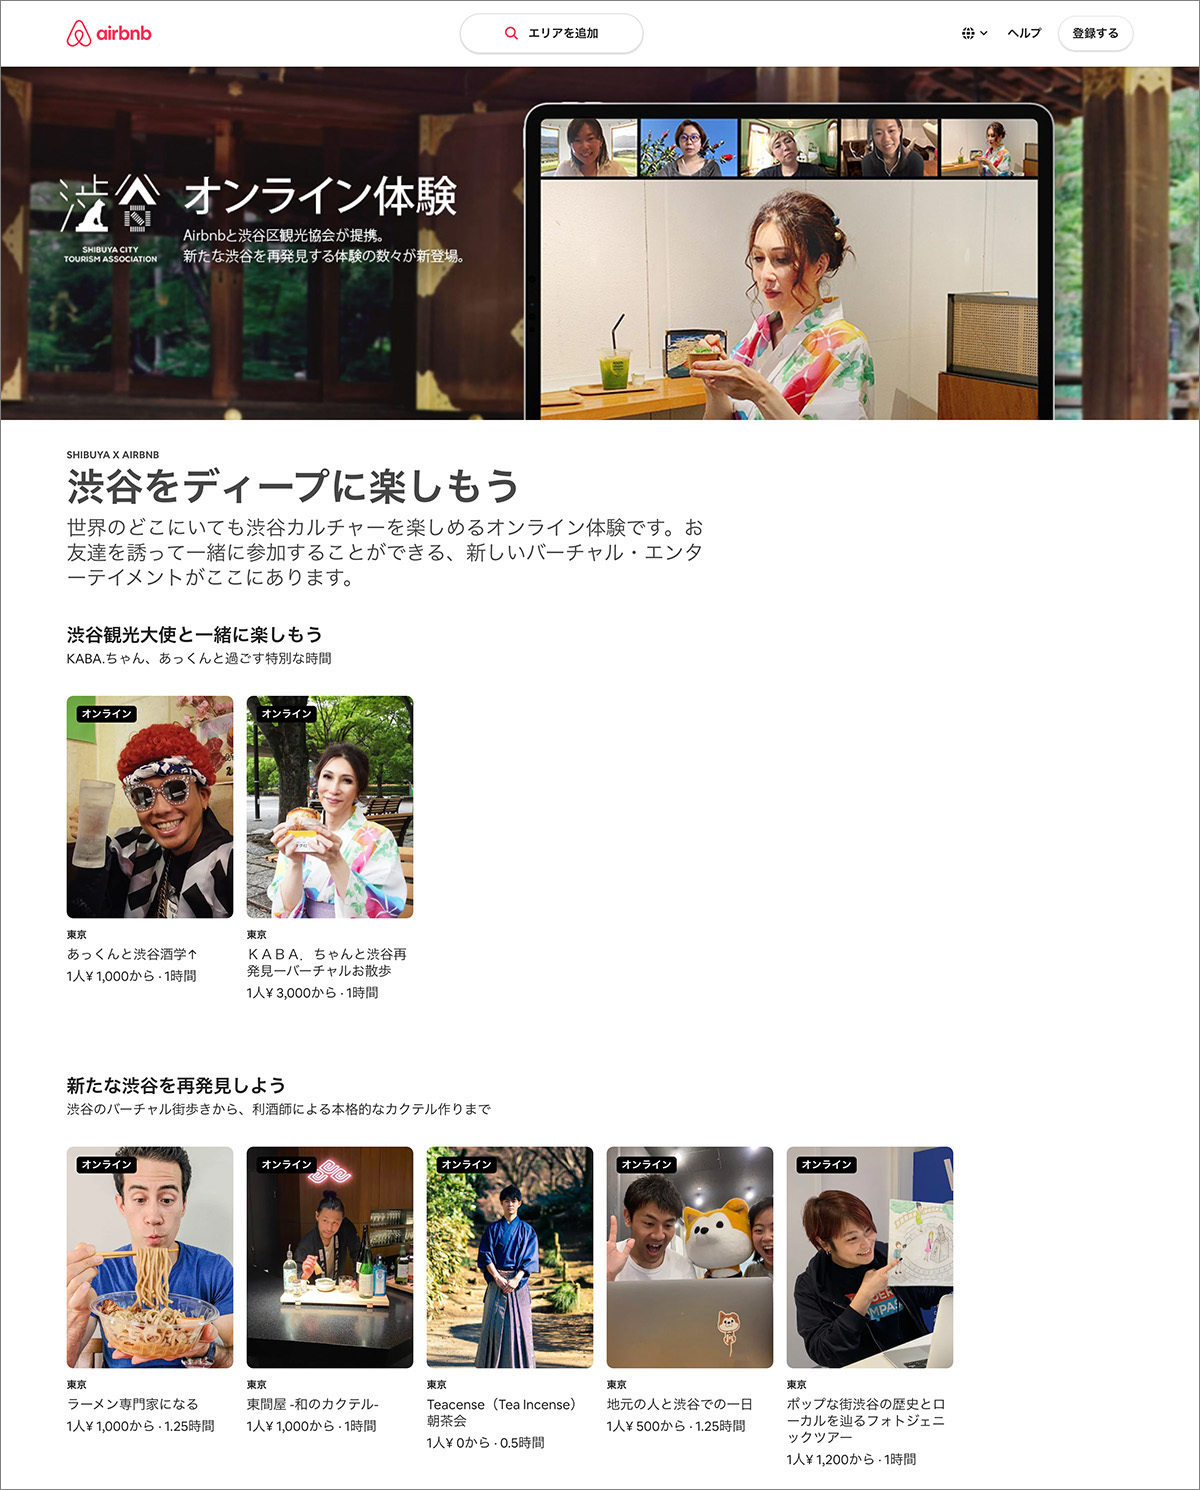 特設サイト「Airbnb × PLAY! SHARE SHIBUYA!」